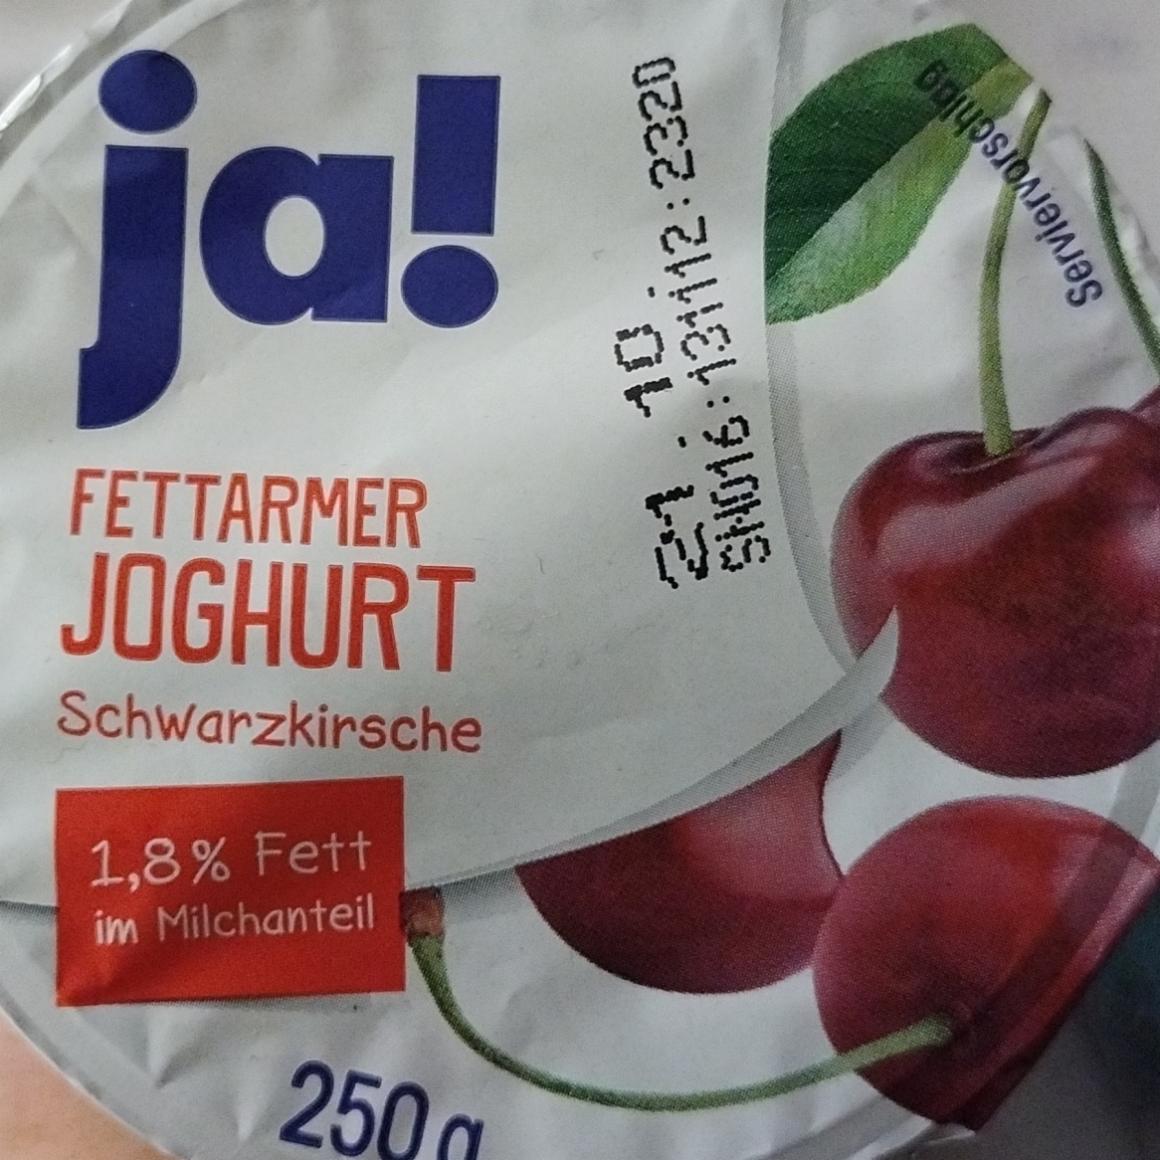 Фото - Fettarmer Joghurt Schwarzkirsche 1,8% Fett im Milchanteil Ja!